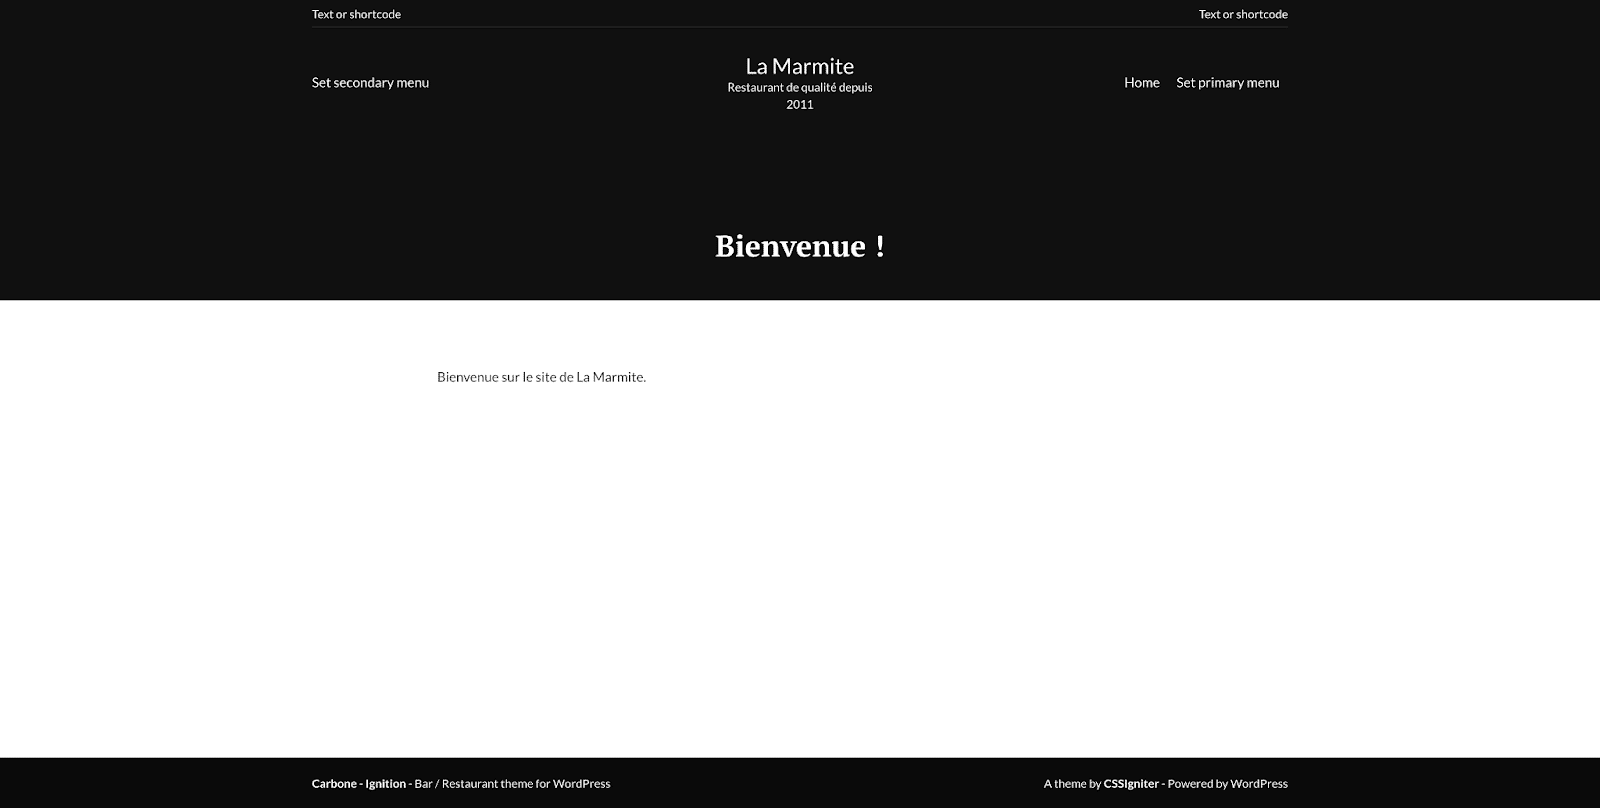 Page d'accueil d'un site avec le thème Carbone, sans avoir importé de démo.